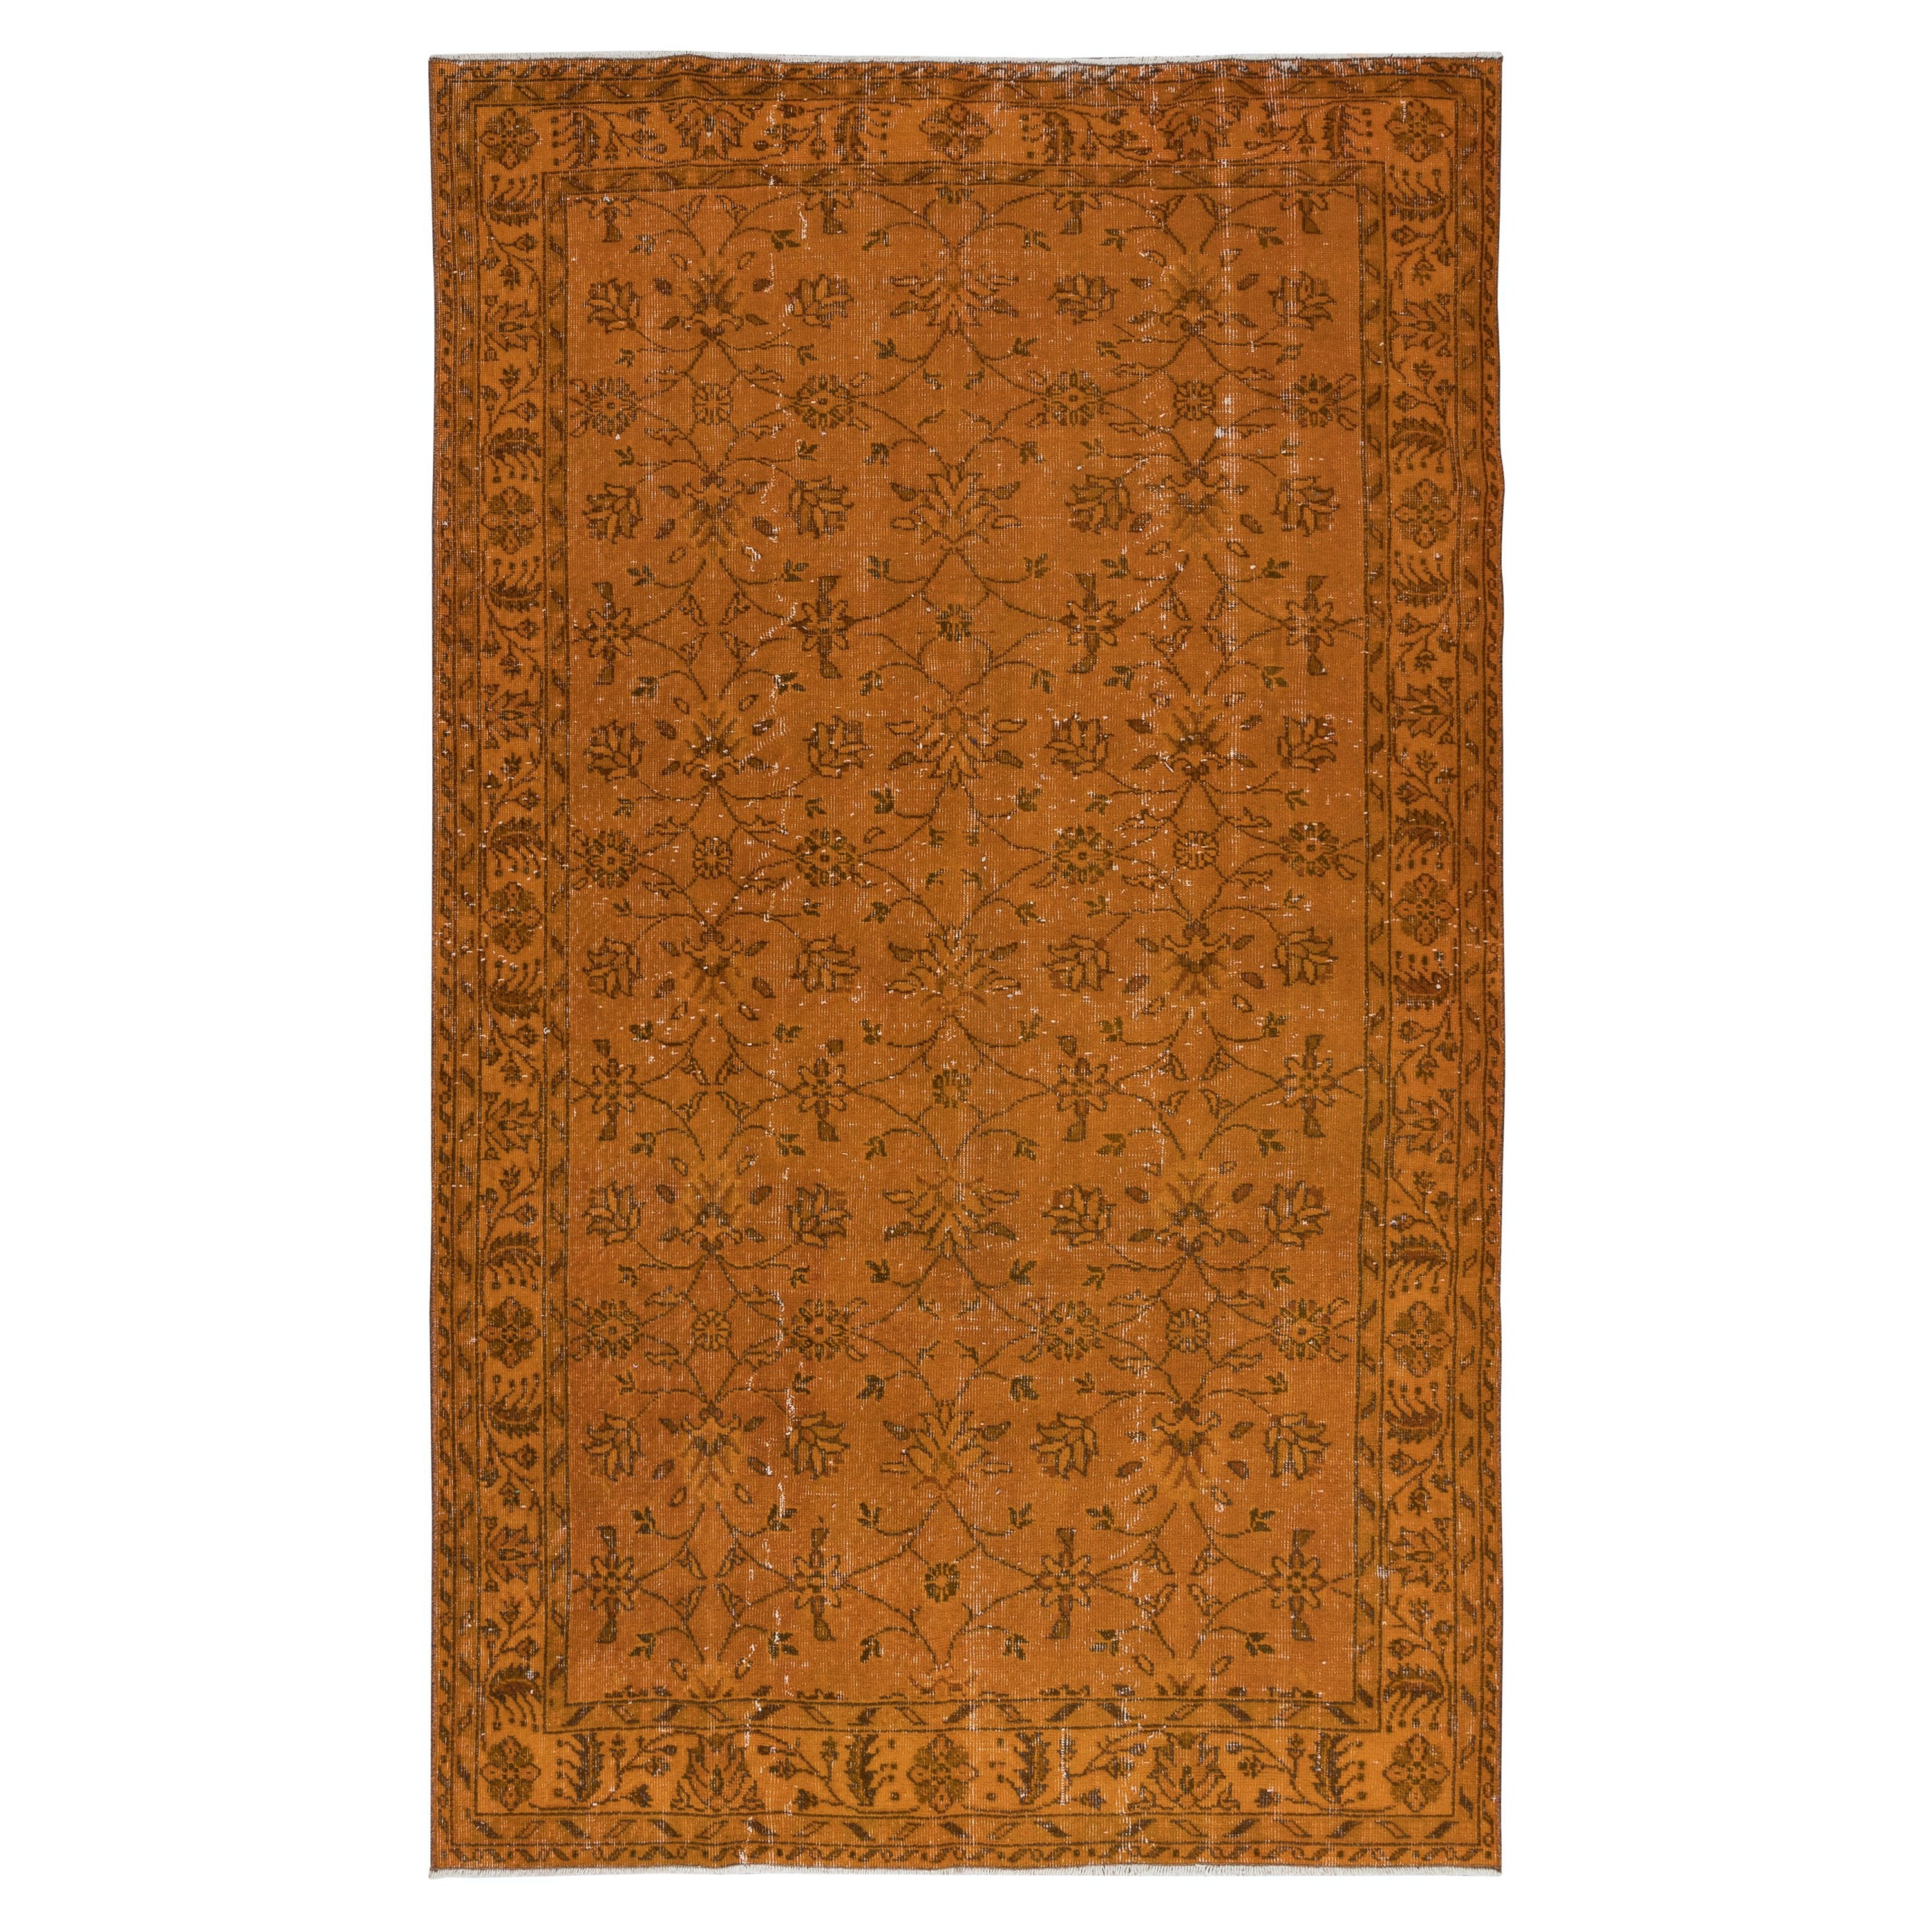 4x9.4 Ft Handmade Rug with All-Over Floral Design, Orange Turkish Carpet For Sale